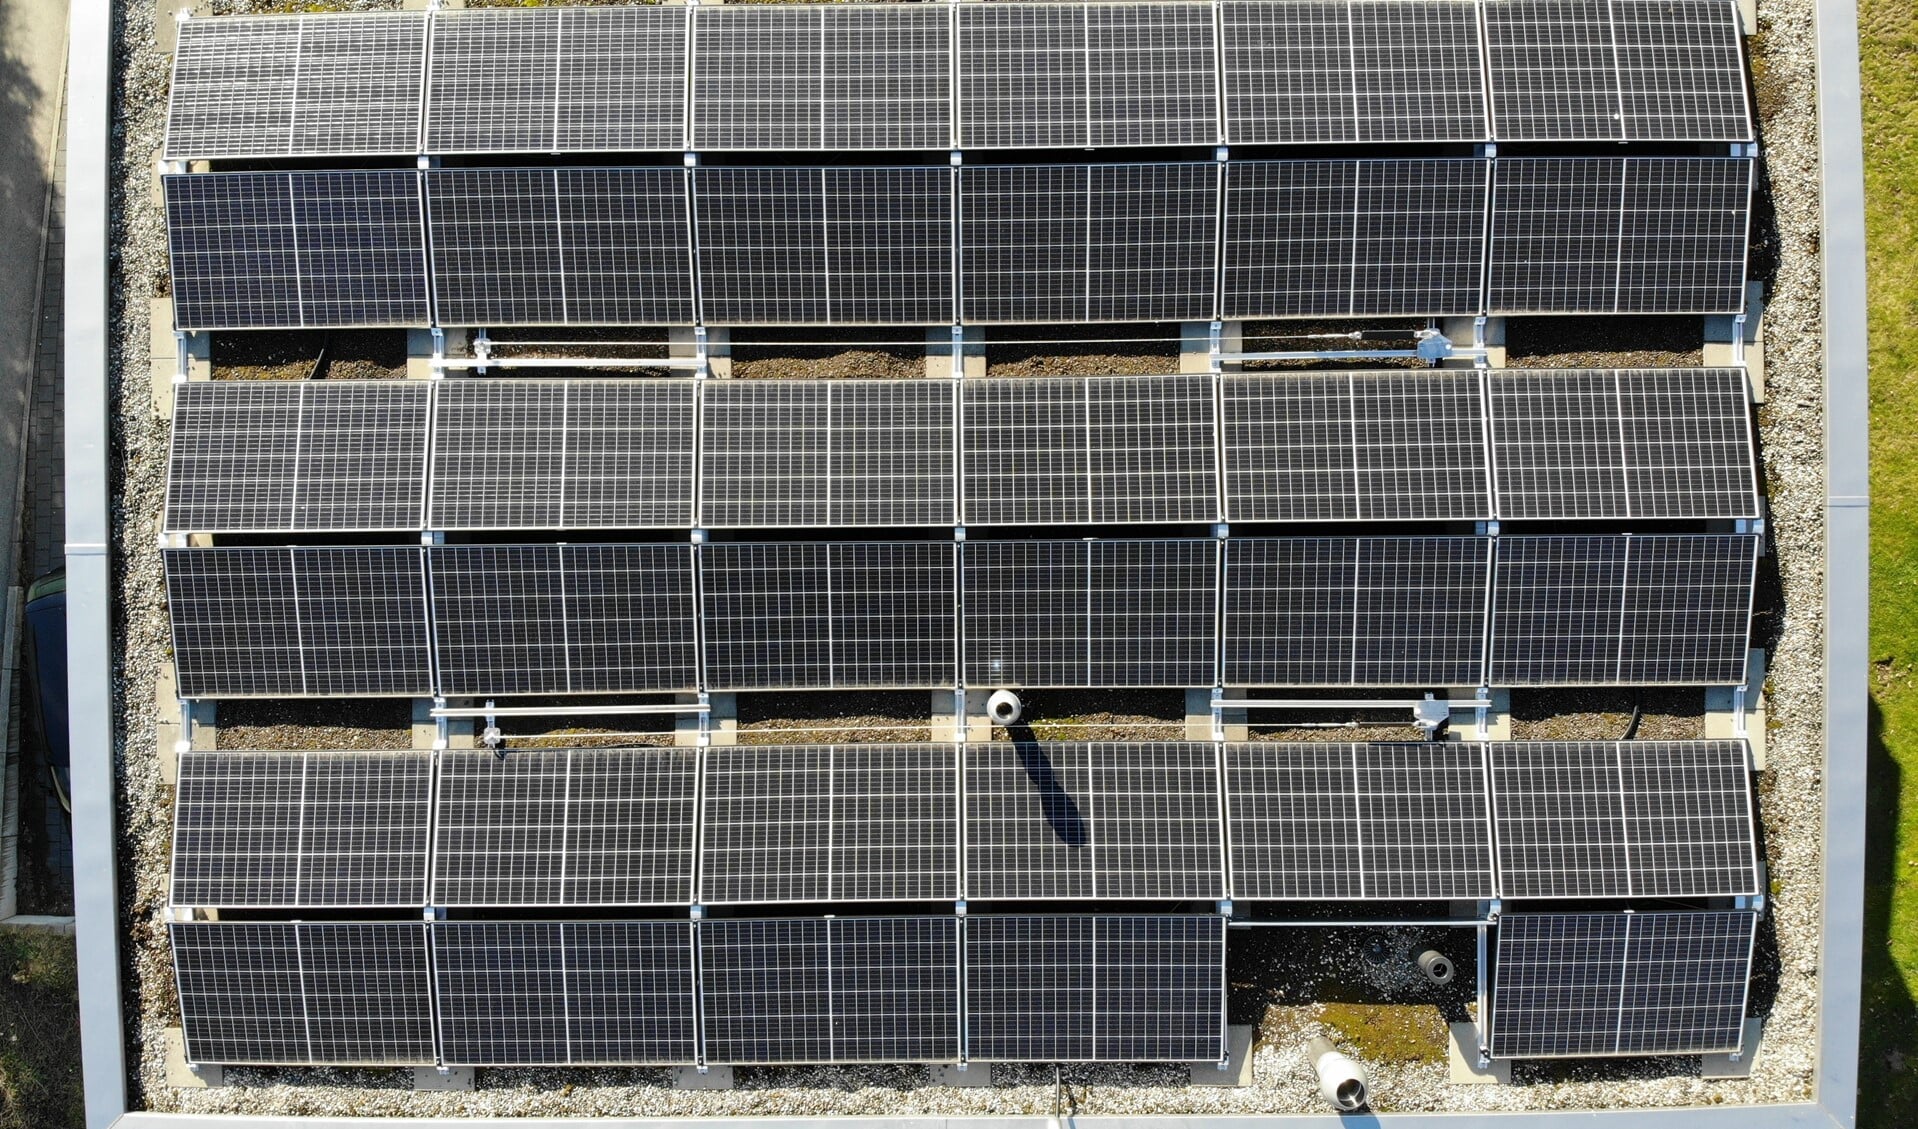 De gemeente wil elektriciteit opwekken met zonne-energie, met het liefst zoveel mogelijk zonnepanelen op daken.